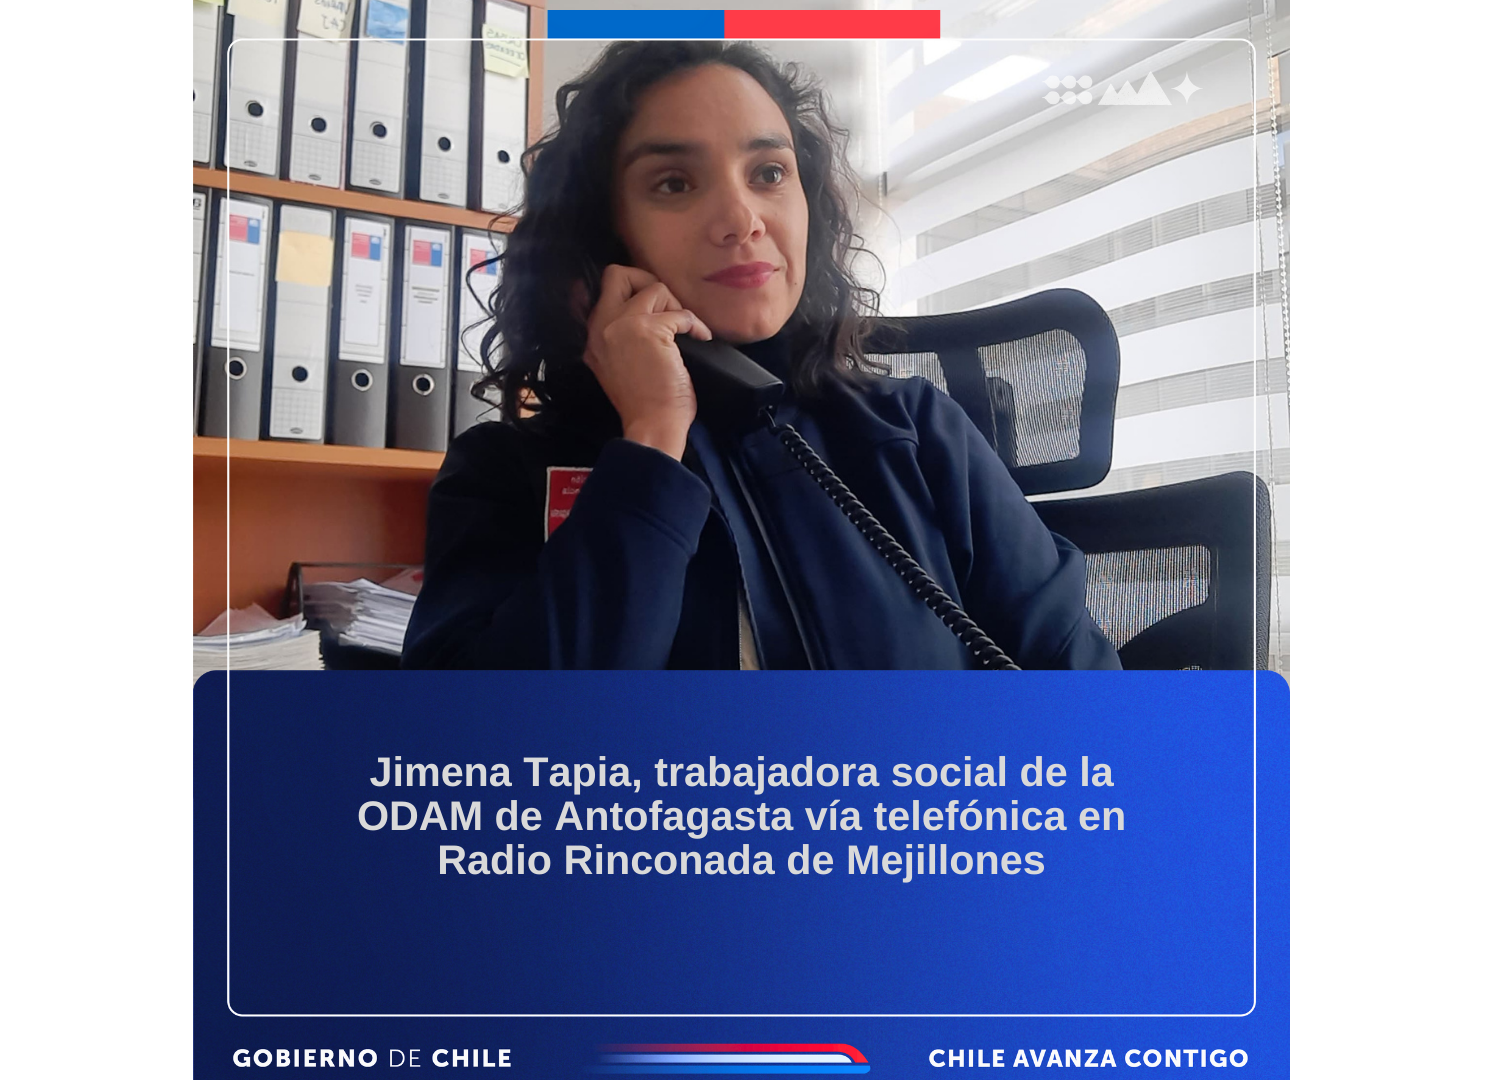 Jimena Tapia, trabajadora social de la ODAM de Antofagasta vía telefónica en Radio Rinconada de Mejillones